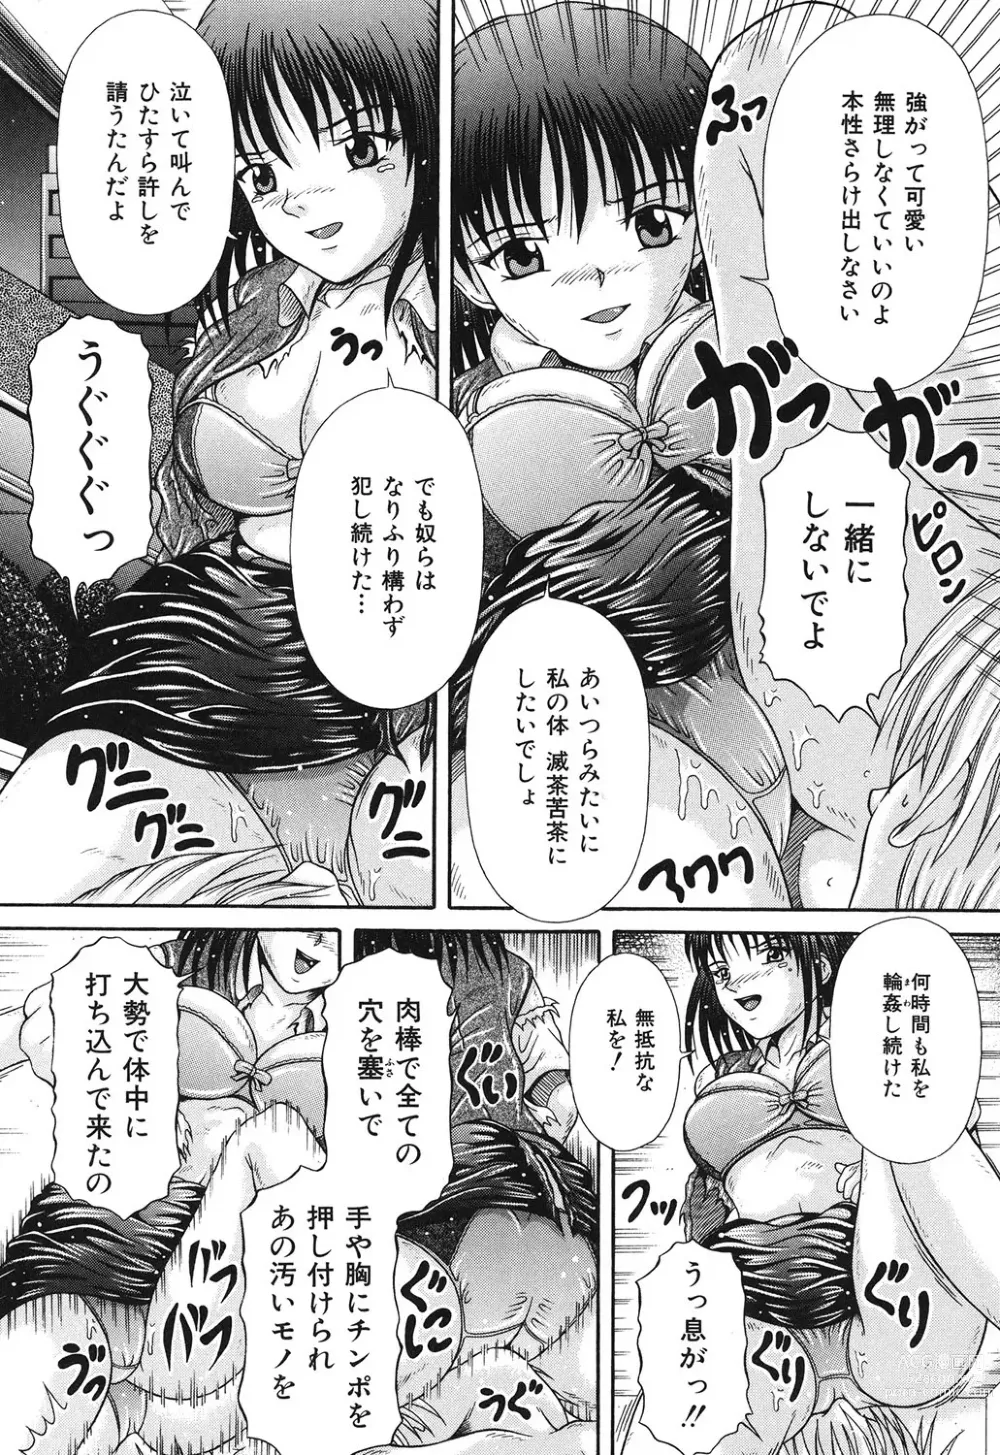 Page 13 of manga Todokanai Zekkyou - Nicht Erreichen Schreien